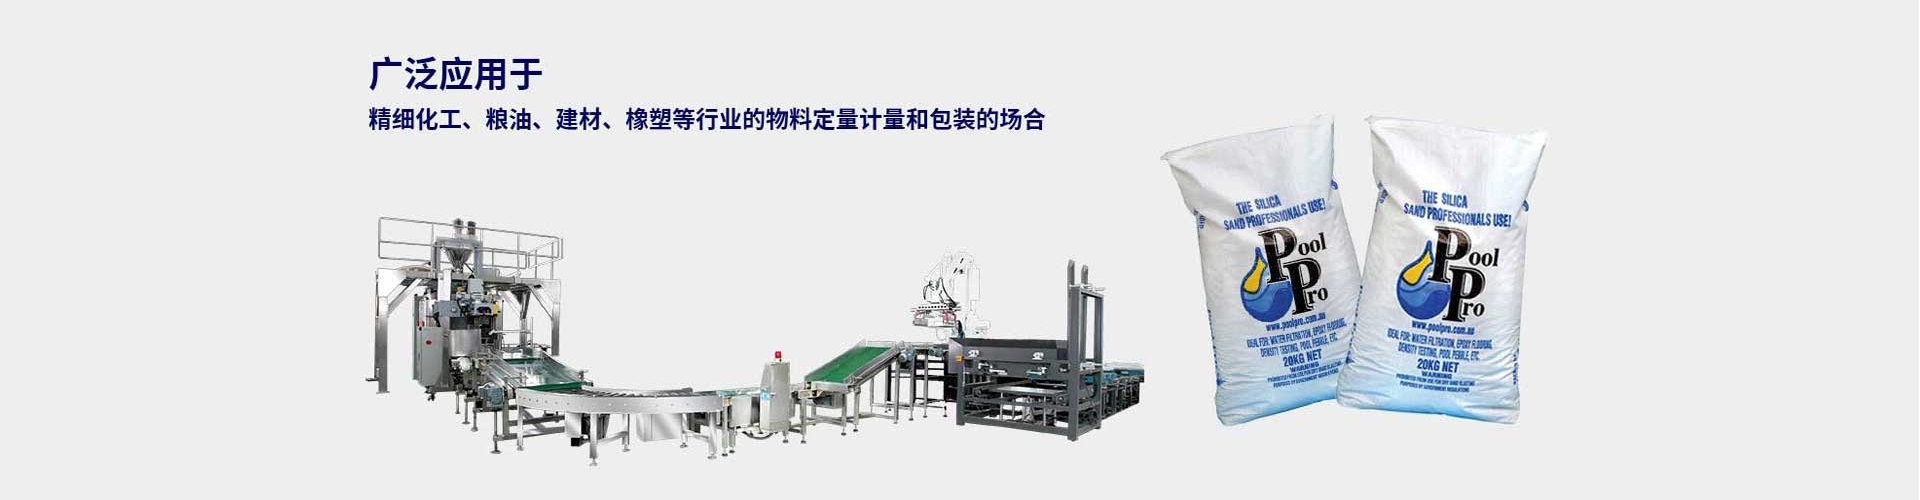 江西昌达自动化有限公司专业从事自动化包装机械研发与制造